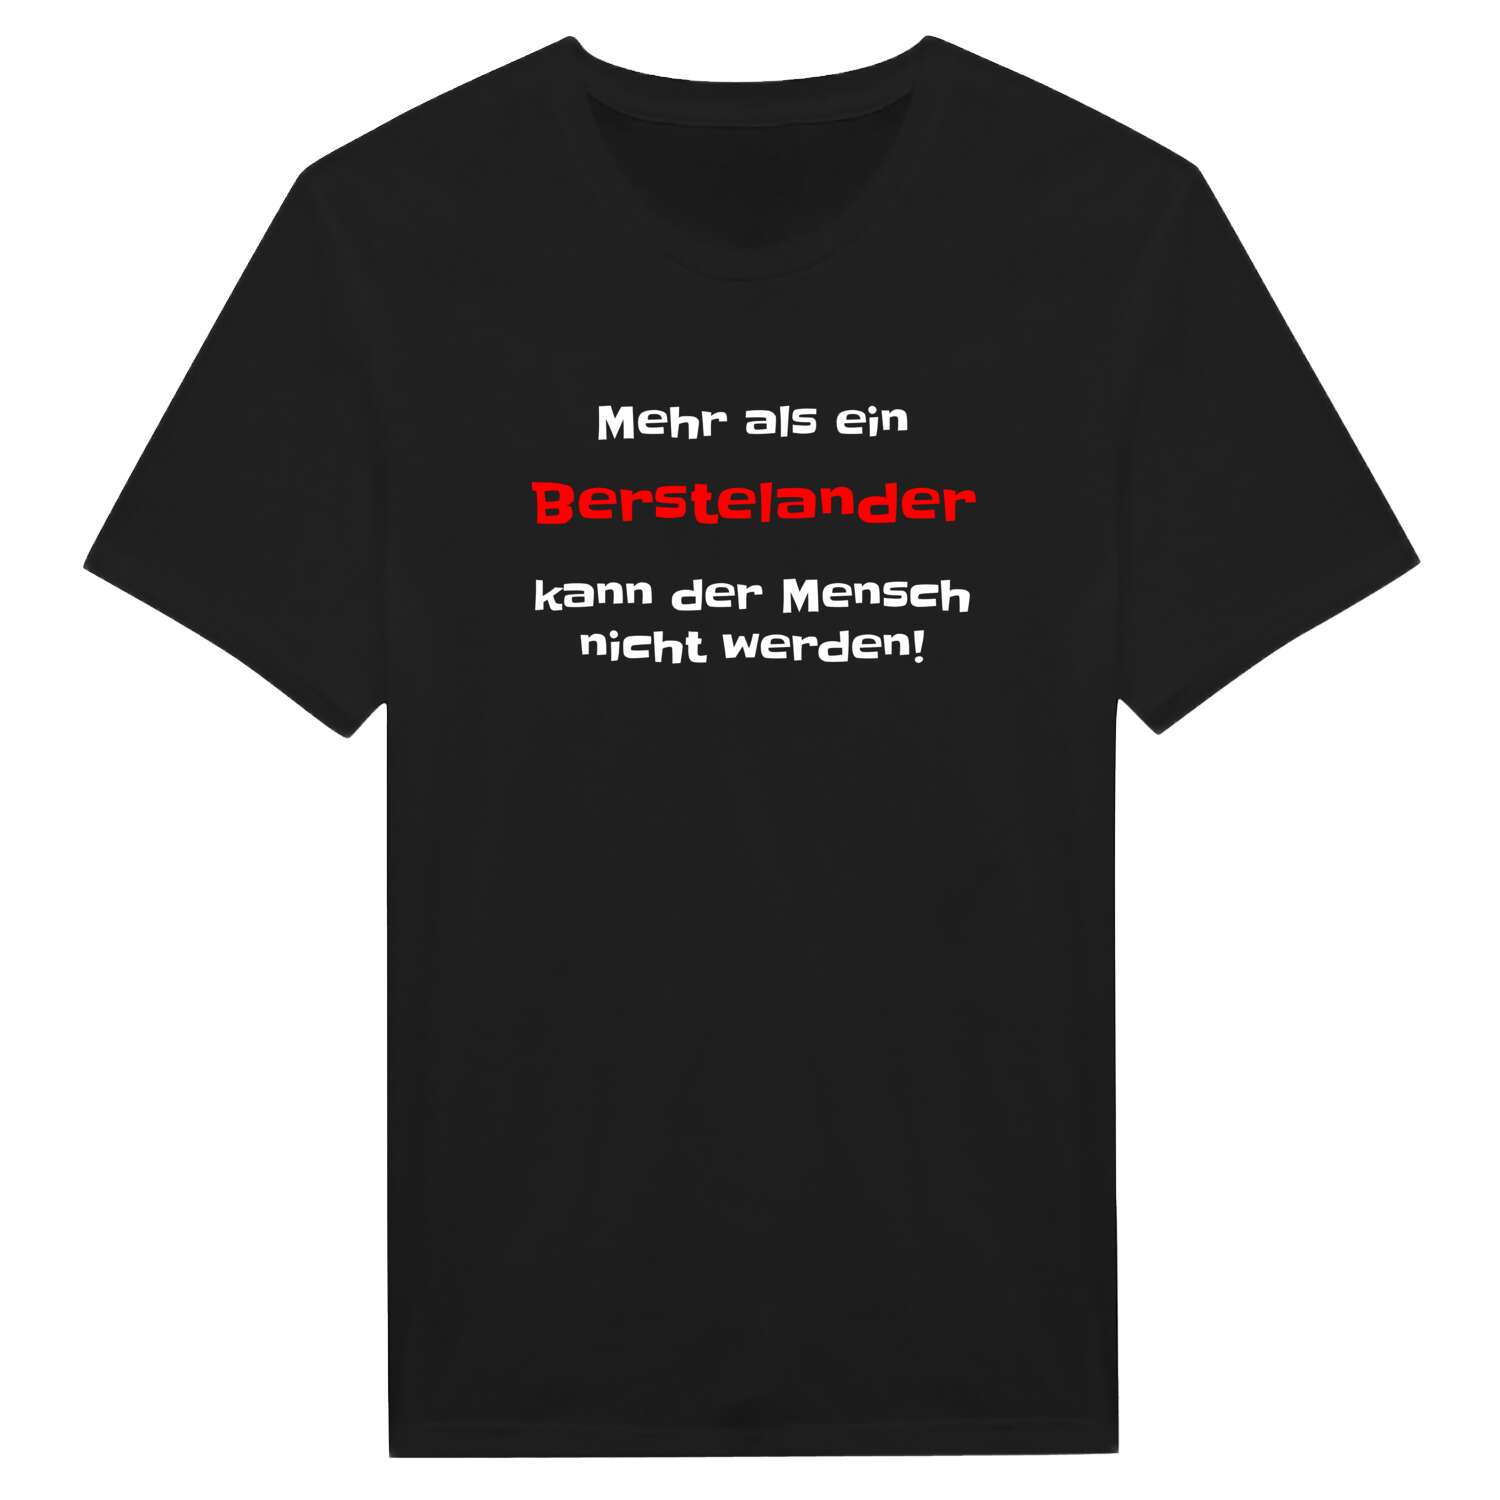 Bersteland T-Shirt »Mehr als ein«